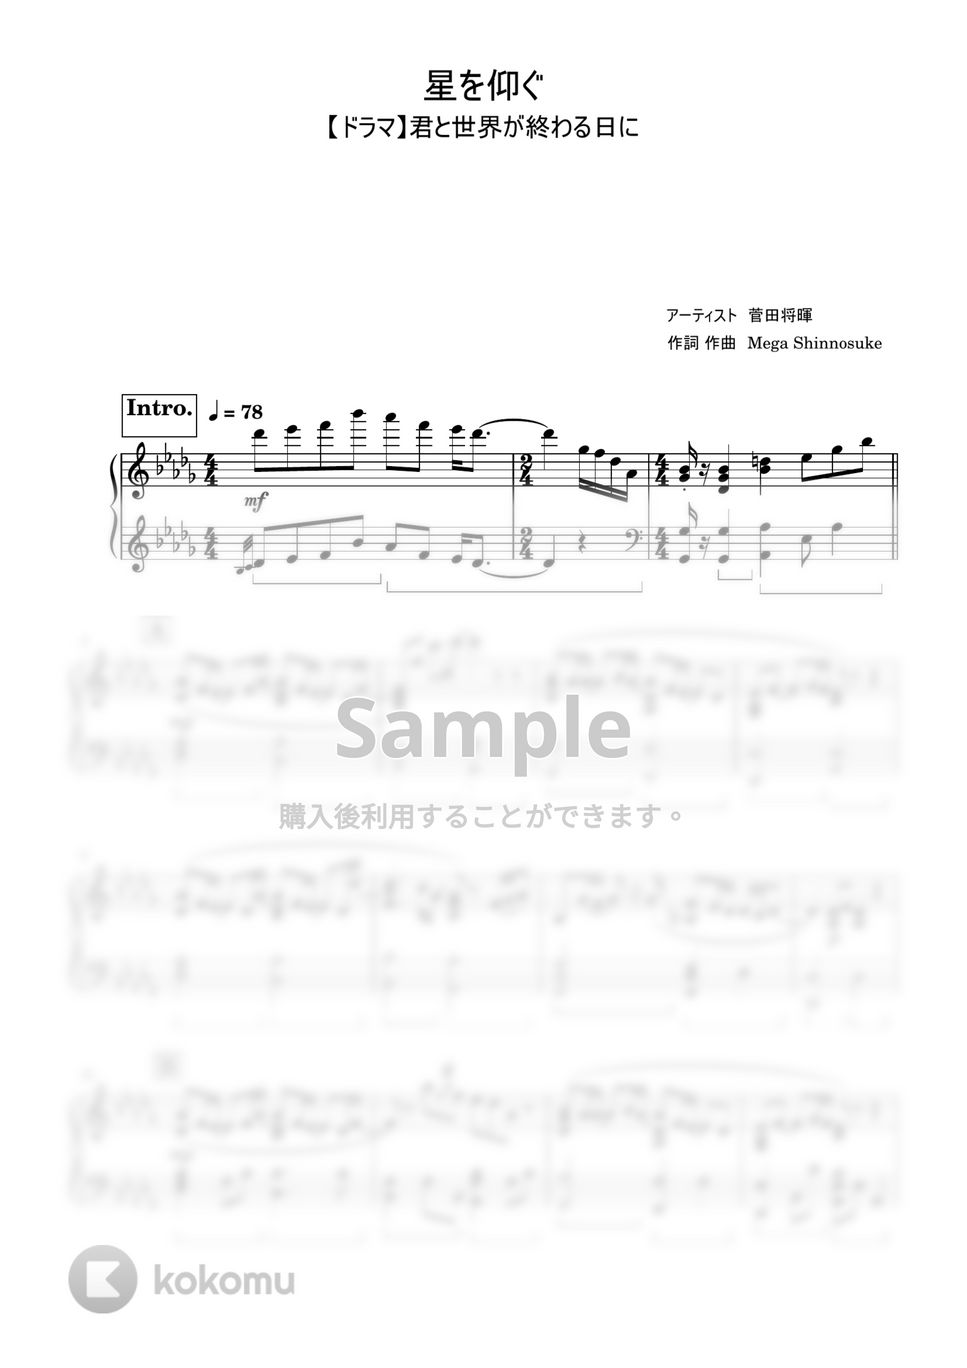 菅田将暉 - 星を仰ぐ (上級) by Saori8Piano